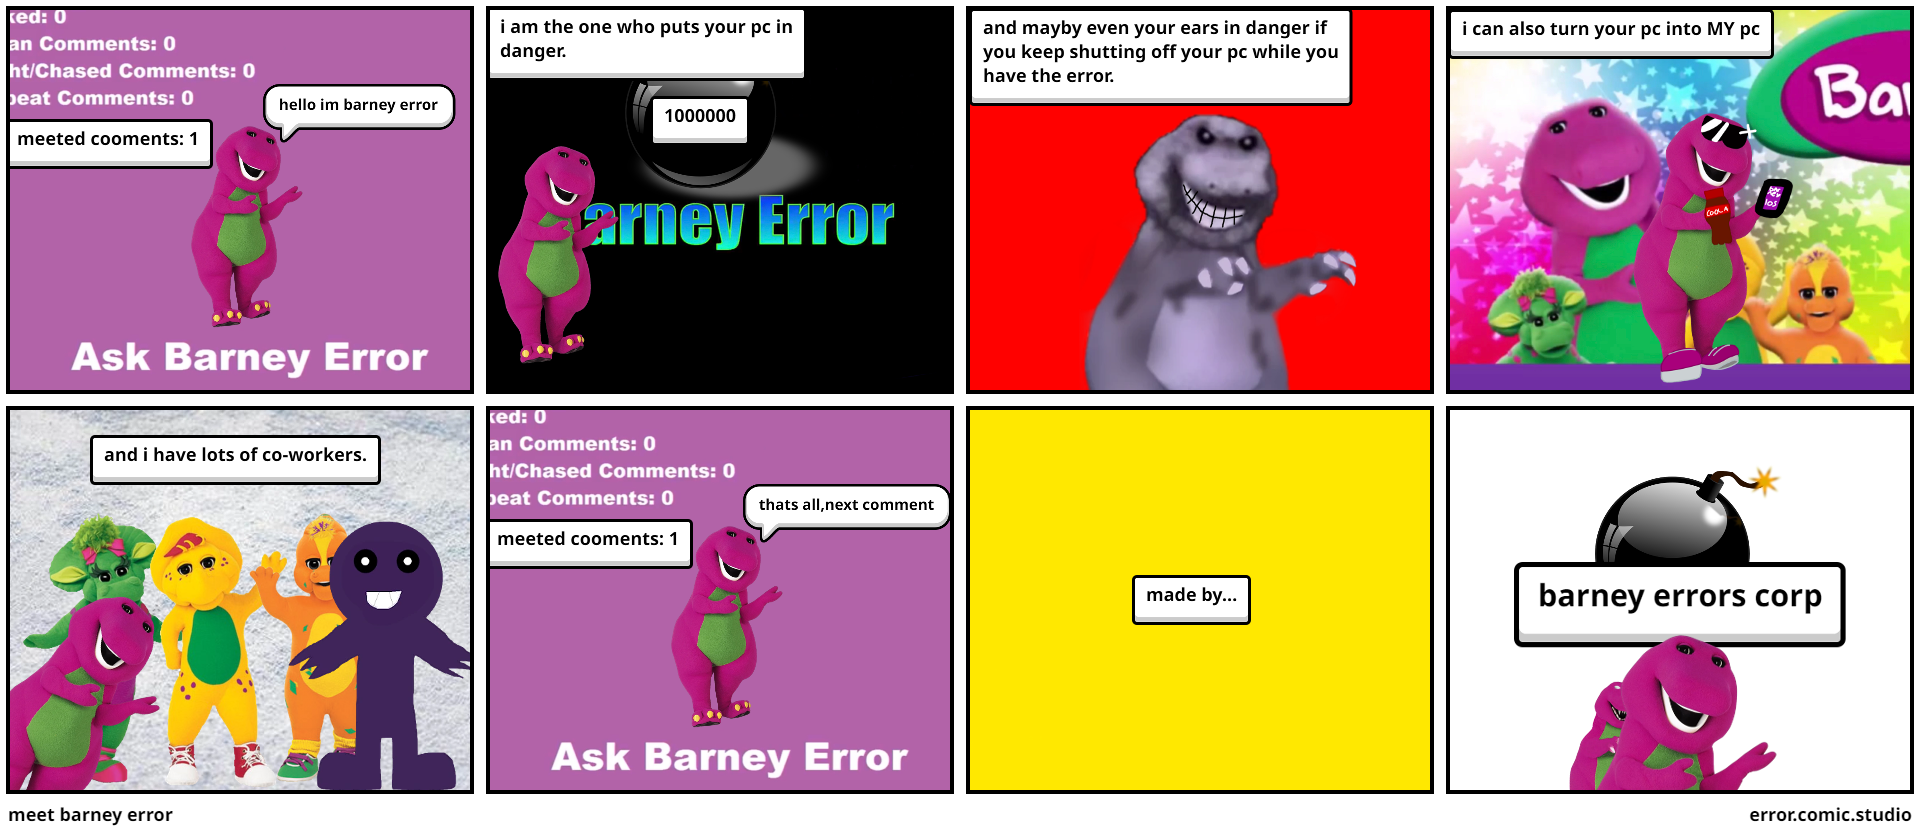 meet barney error